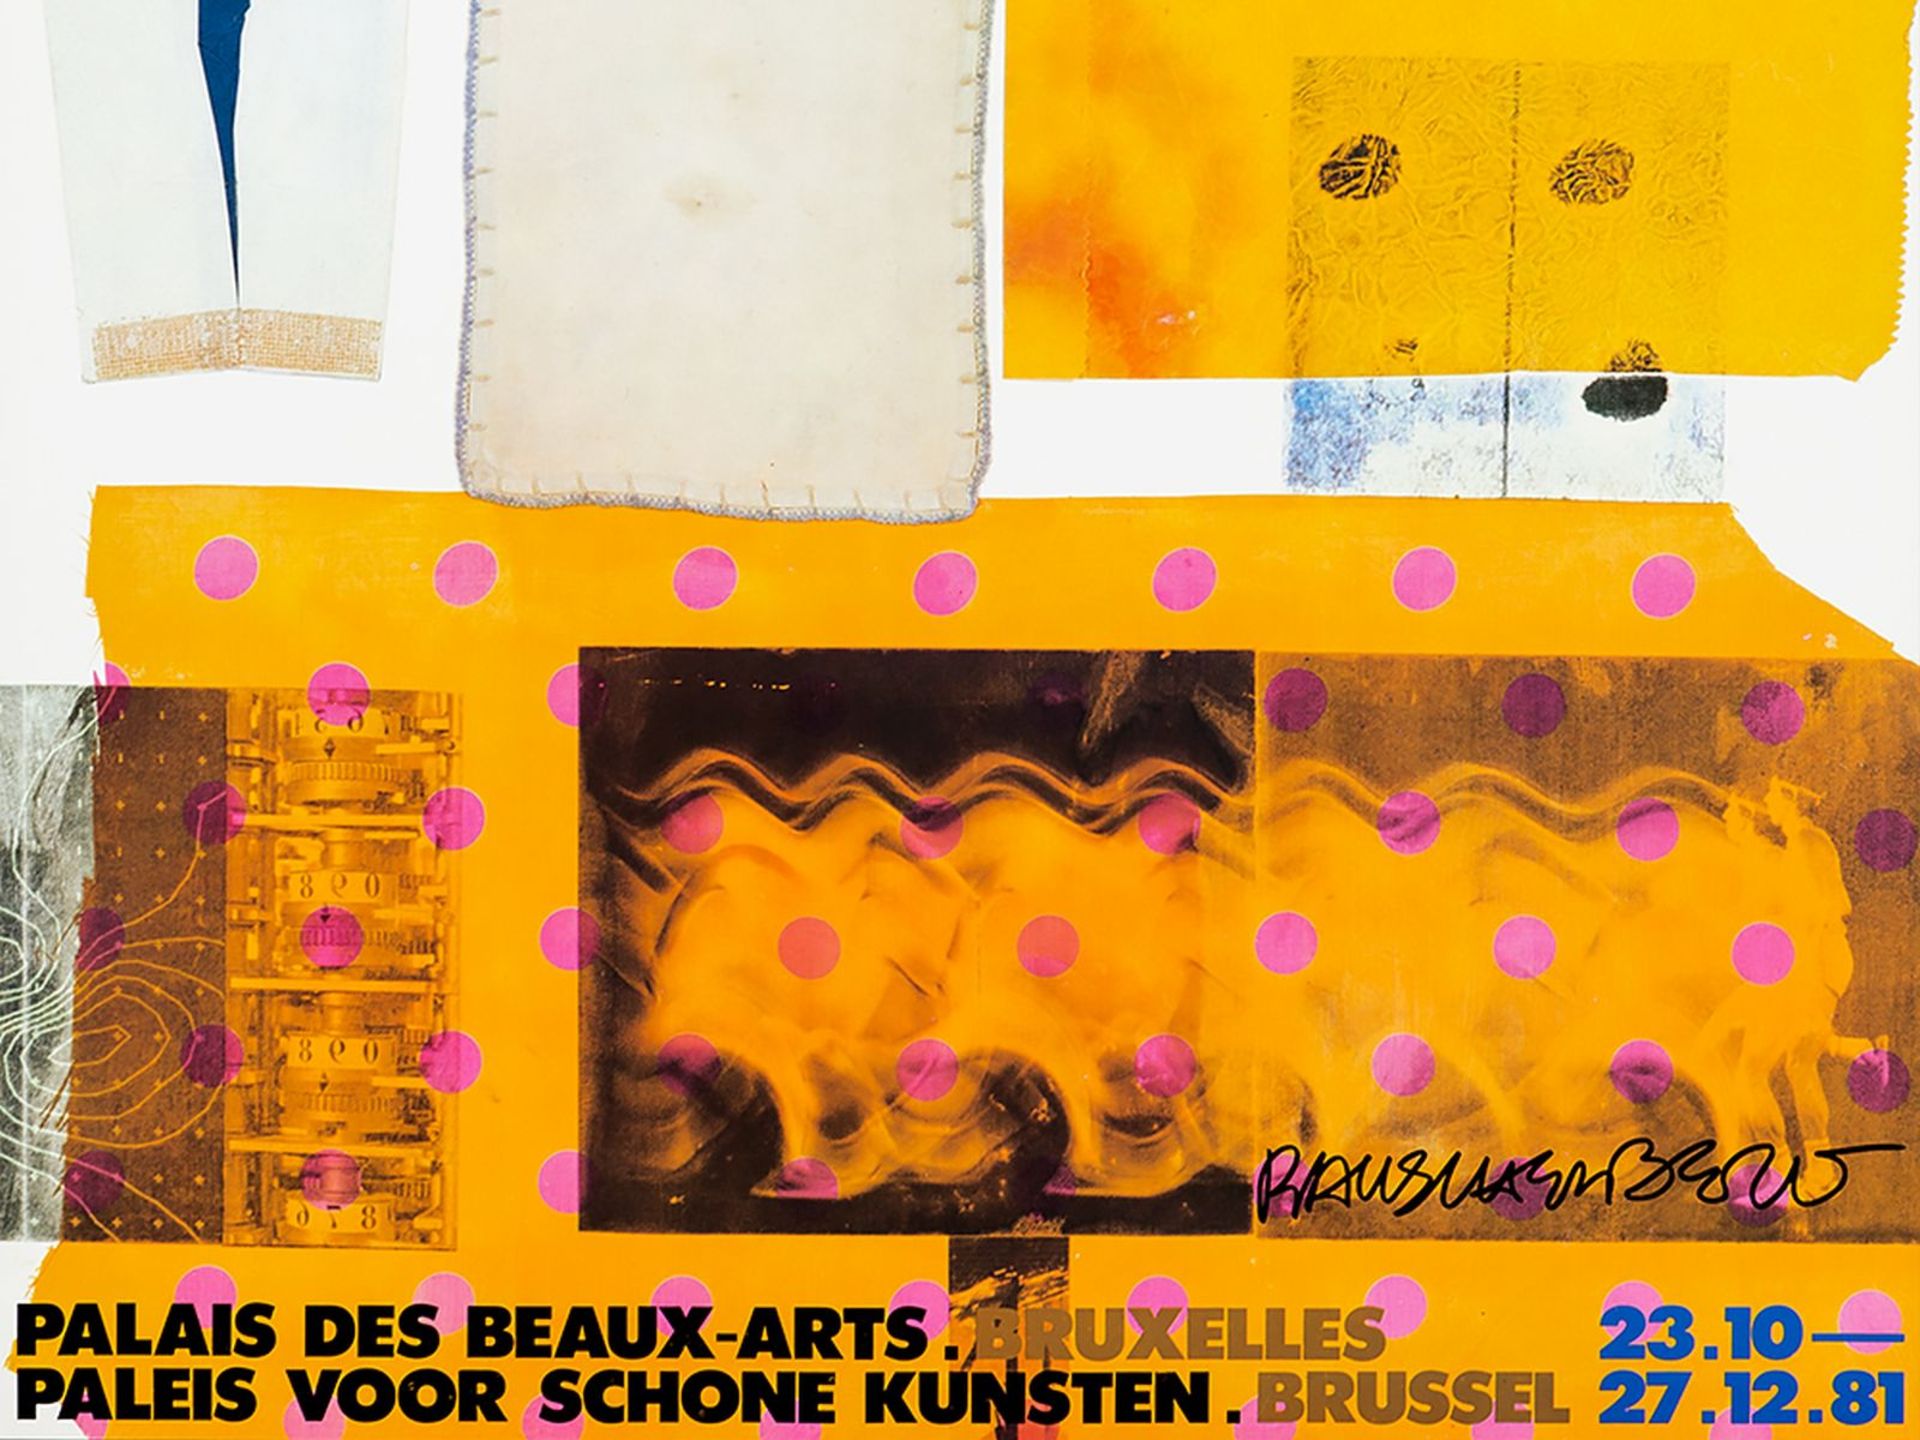 After Robert Rauschenberg, Poster, Palais des Beaux-Arts, 1981 - Image 5 of 8